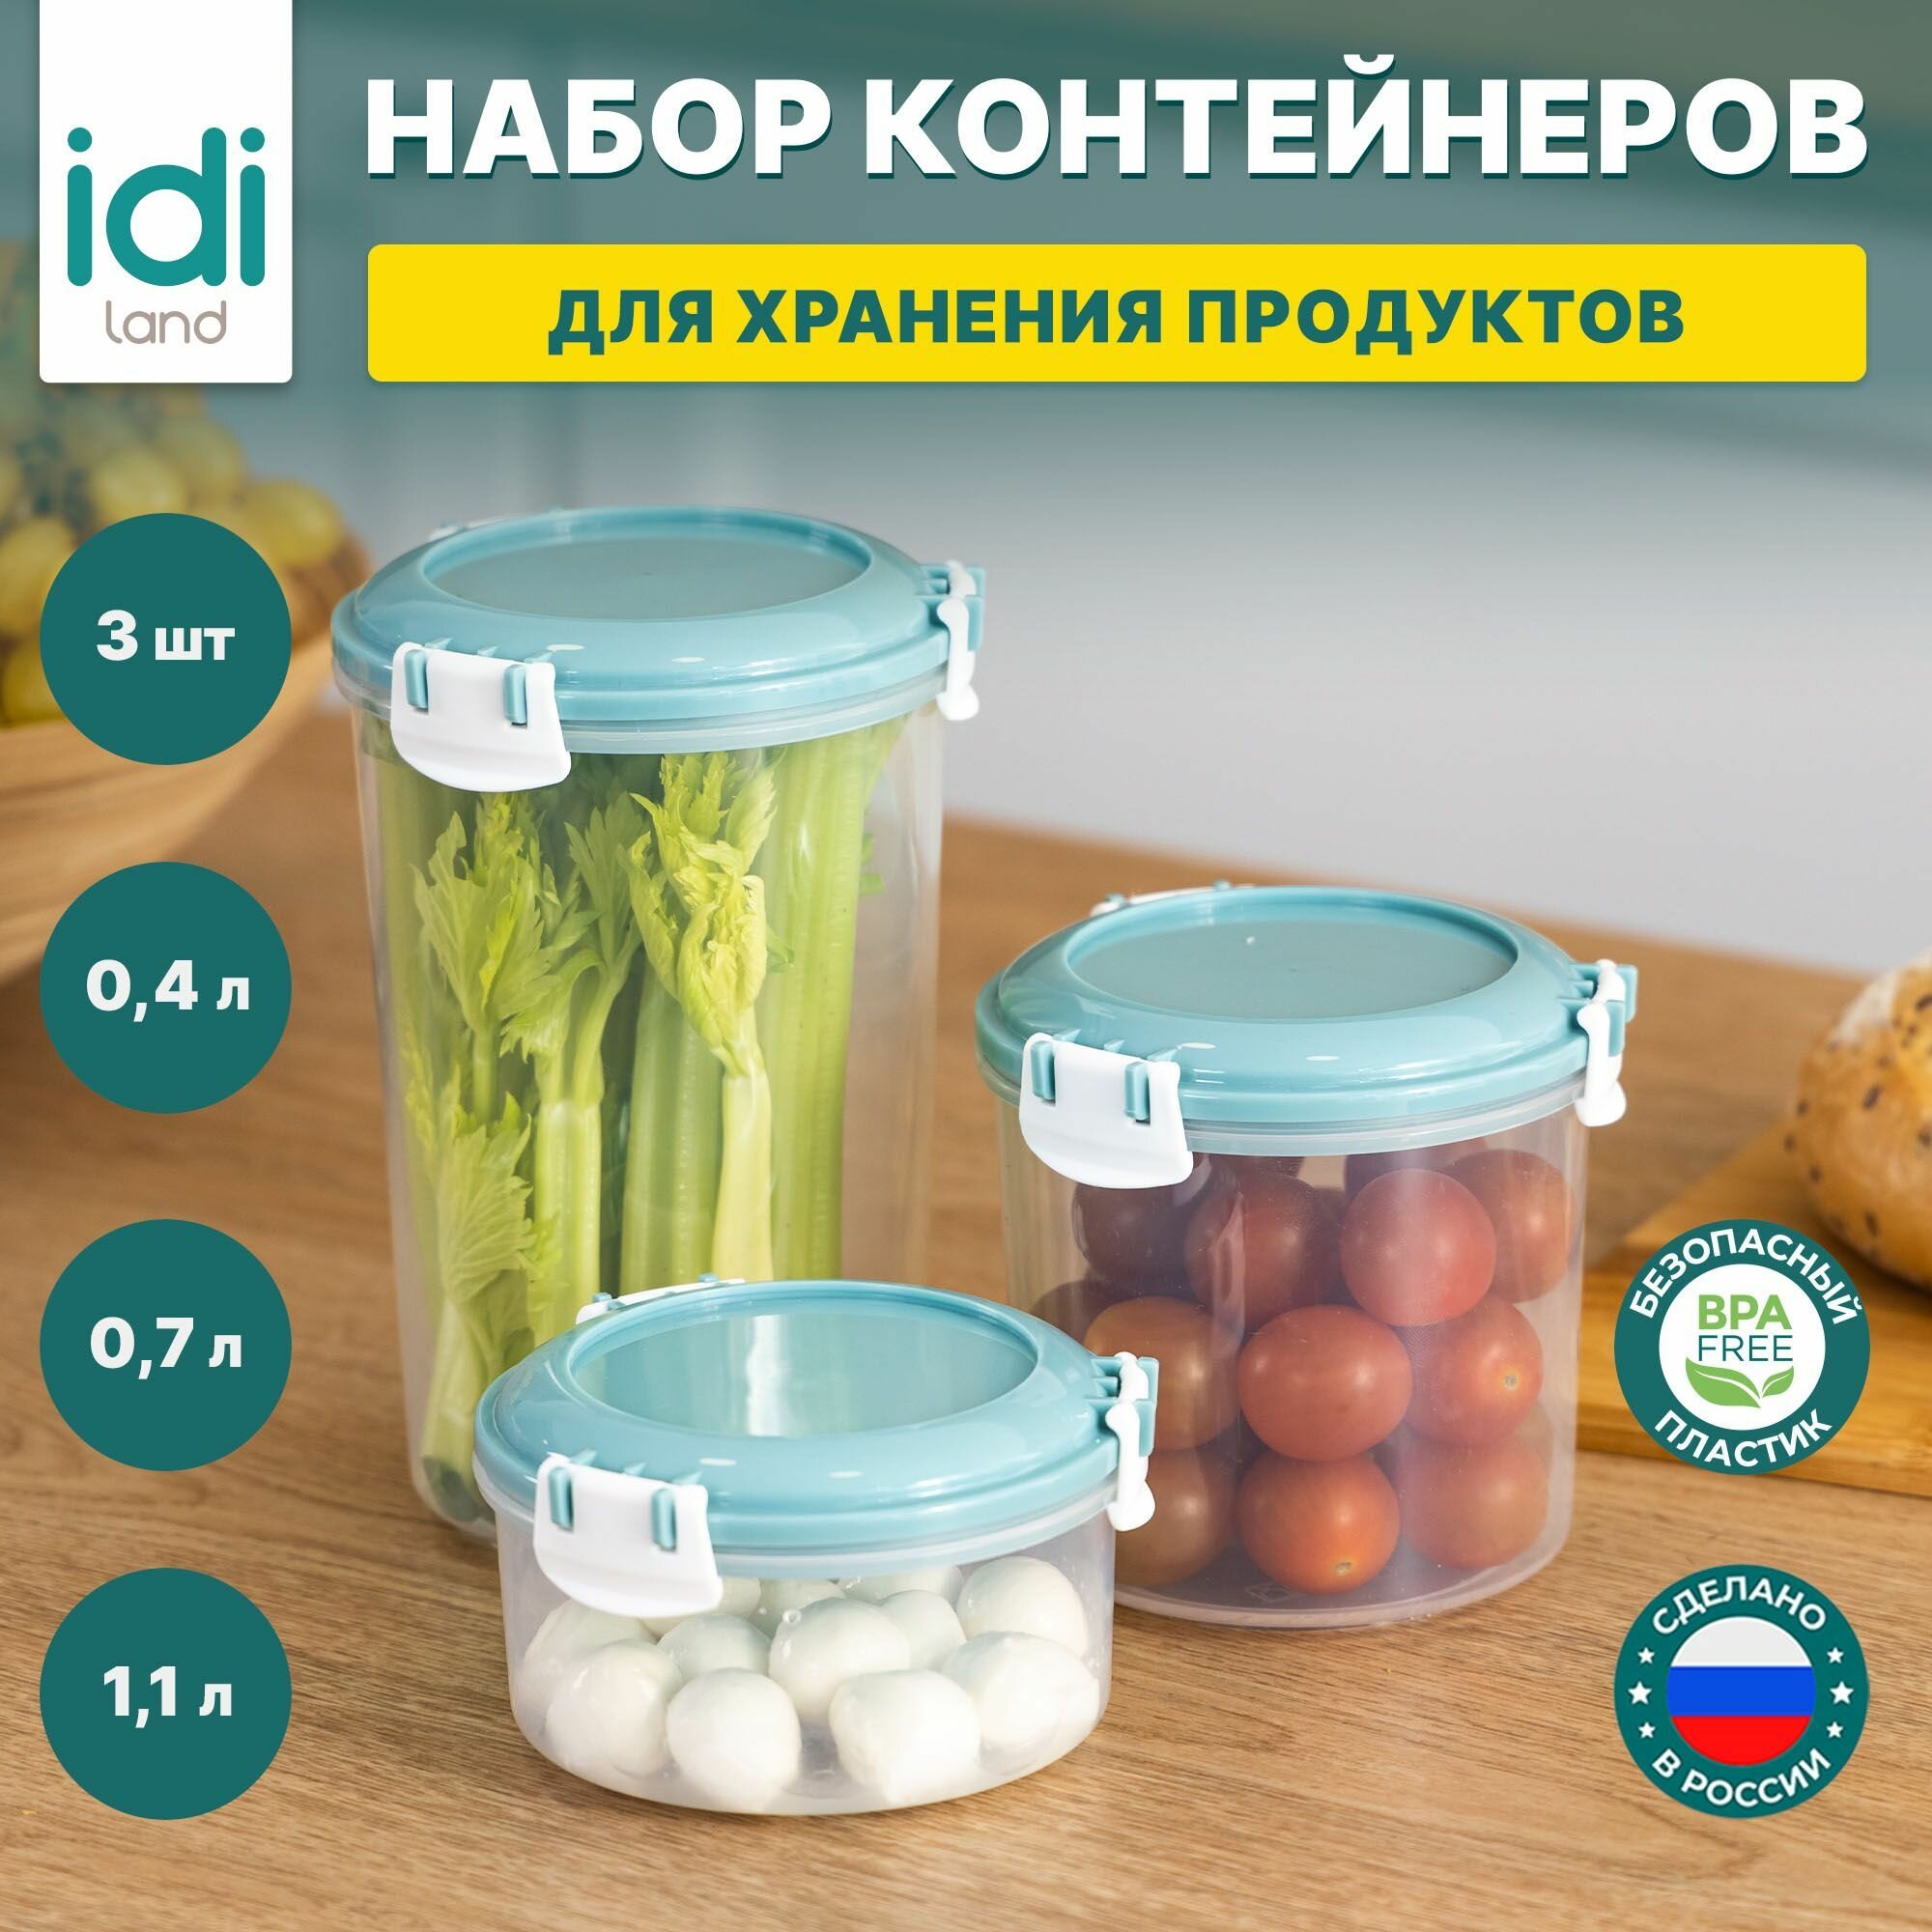 Набор контейнеров для еды IDIland, 3 шт : 400 мл + 1100 мл + 700 мл